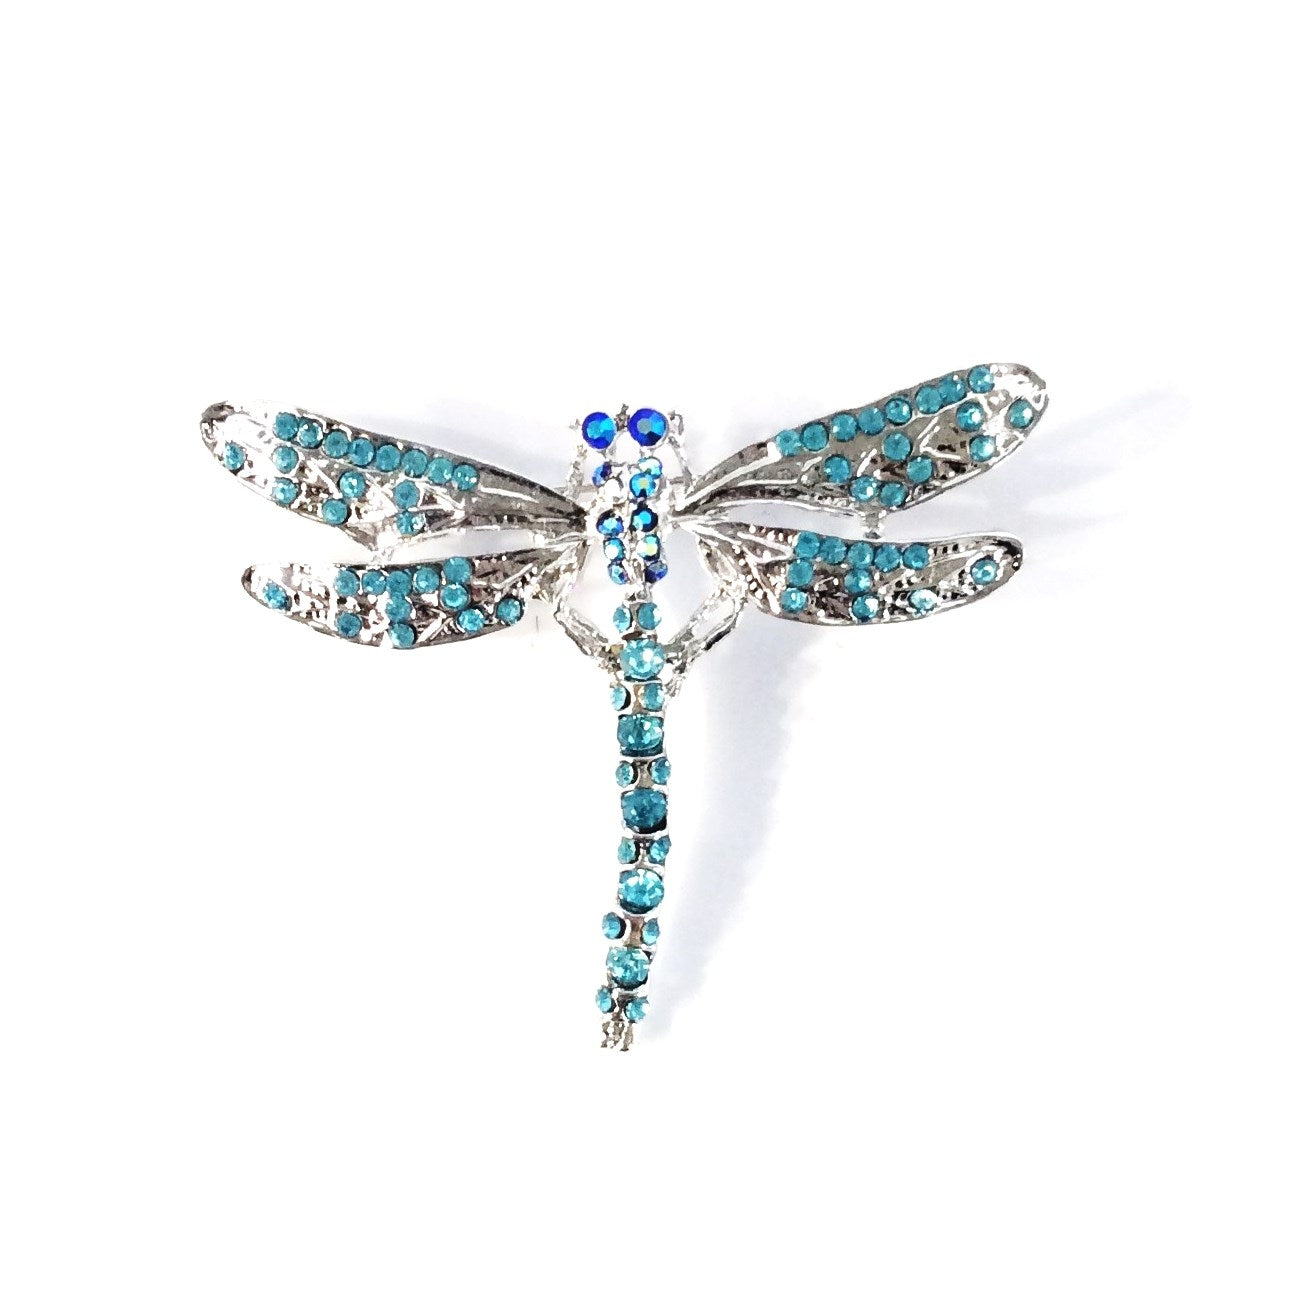 Dragonfly Pin #28-111151AQ (Aqua)